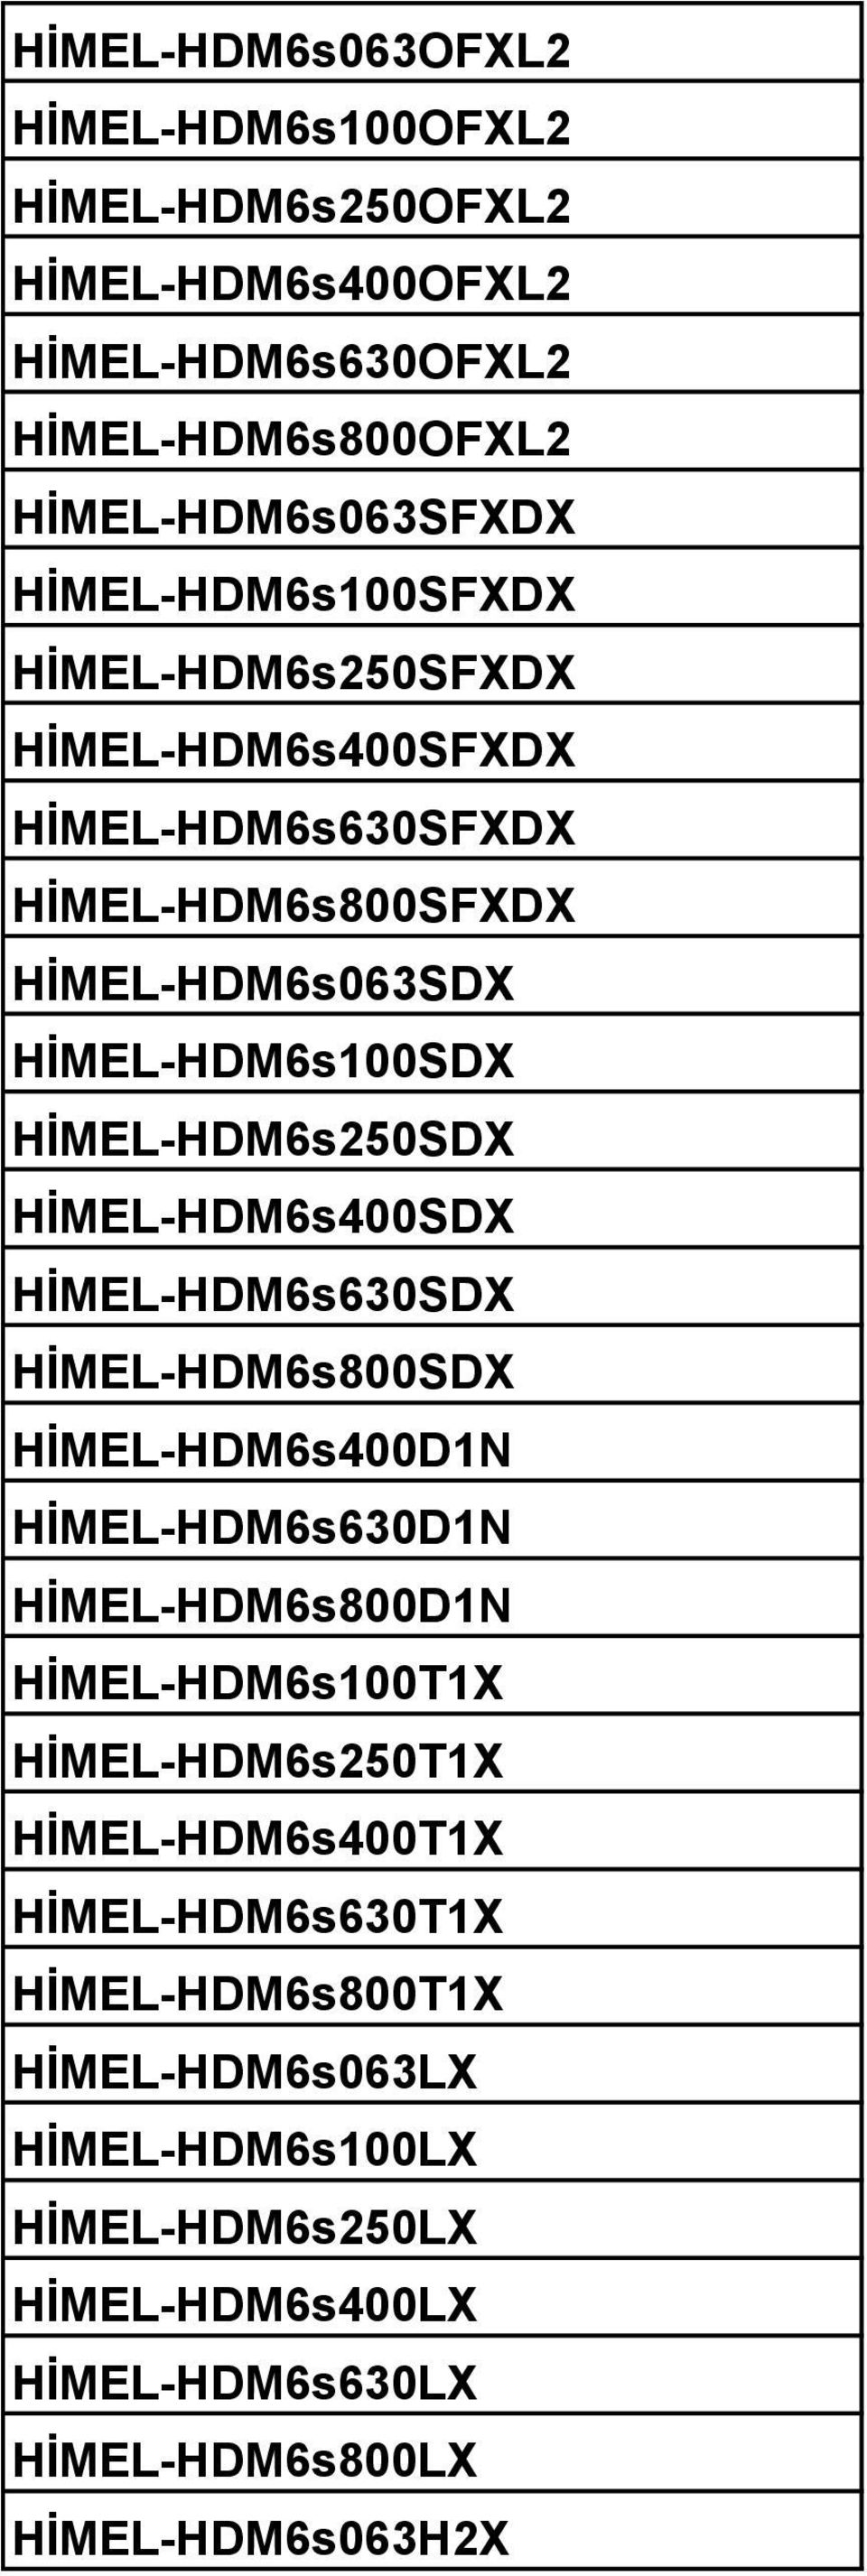 HİMEL-HDM6s250SDX HİMEL-HDM6s400SDX HİMEL-HDM6s630SDX HİMEL-HDM6s800SDX HİMEL-HDM6s400D1N HİMEL-HDM6s630D1N HİMEL-HDM6s800D1N HİMEL-HDM6s100T1X